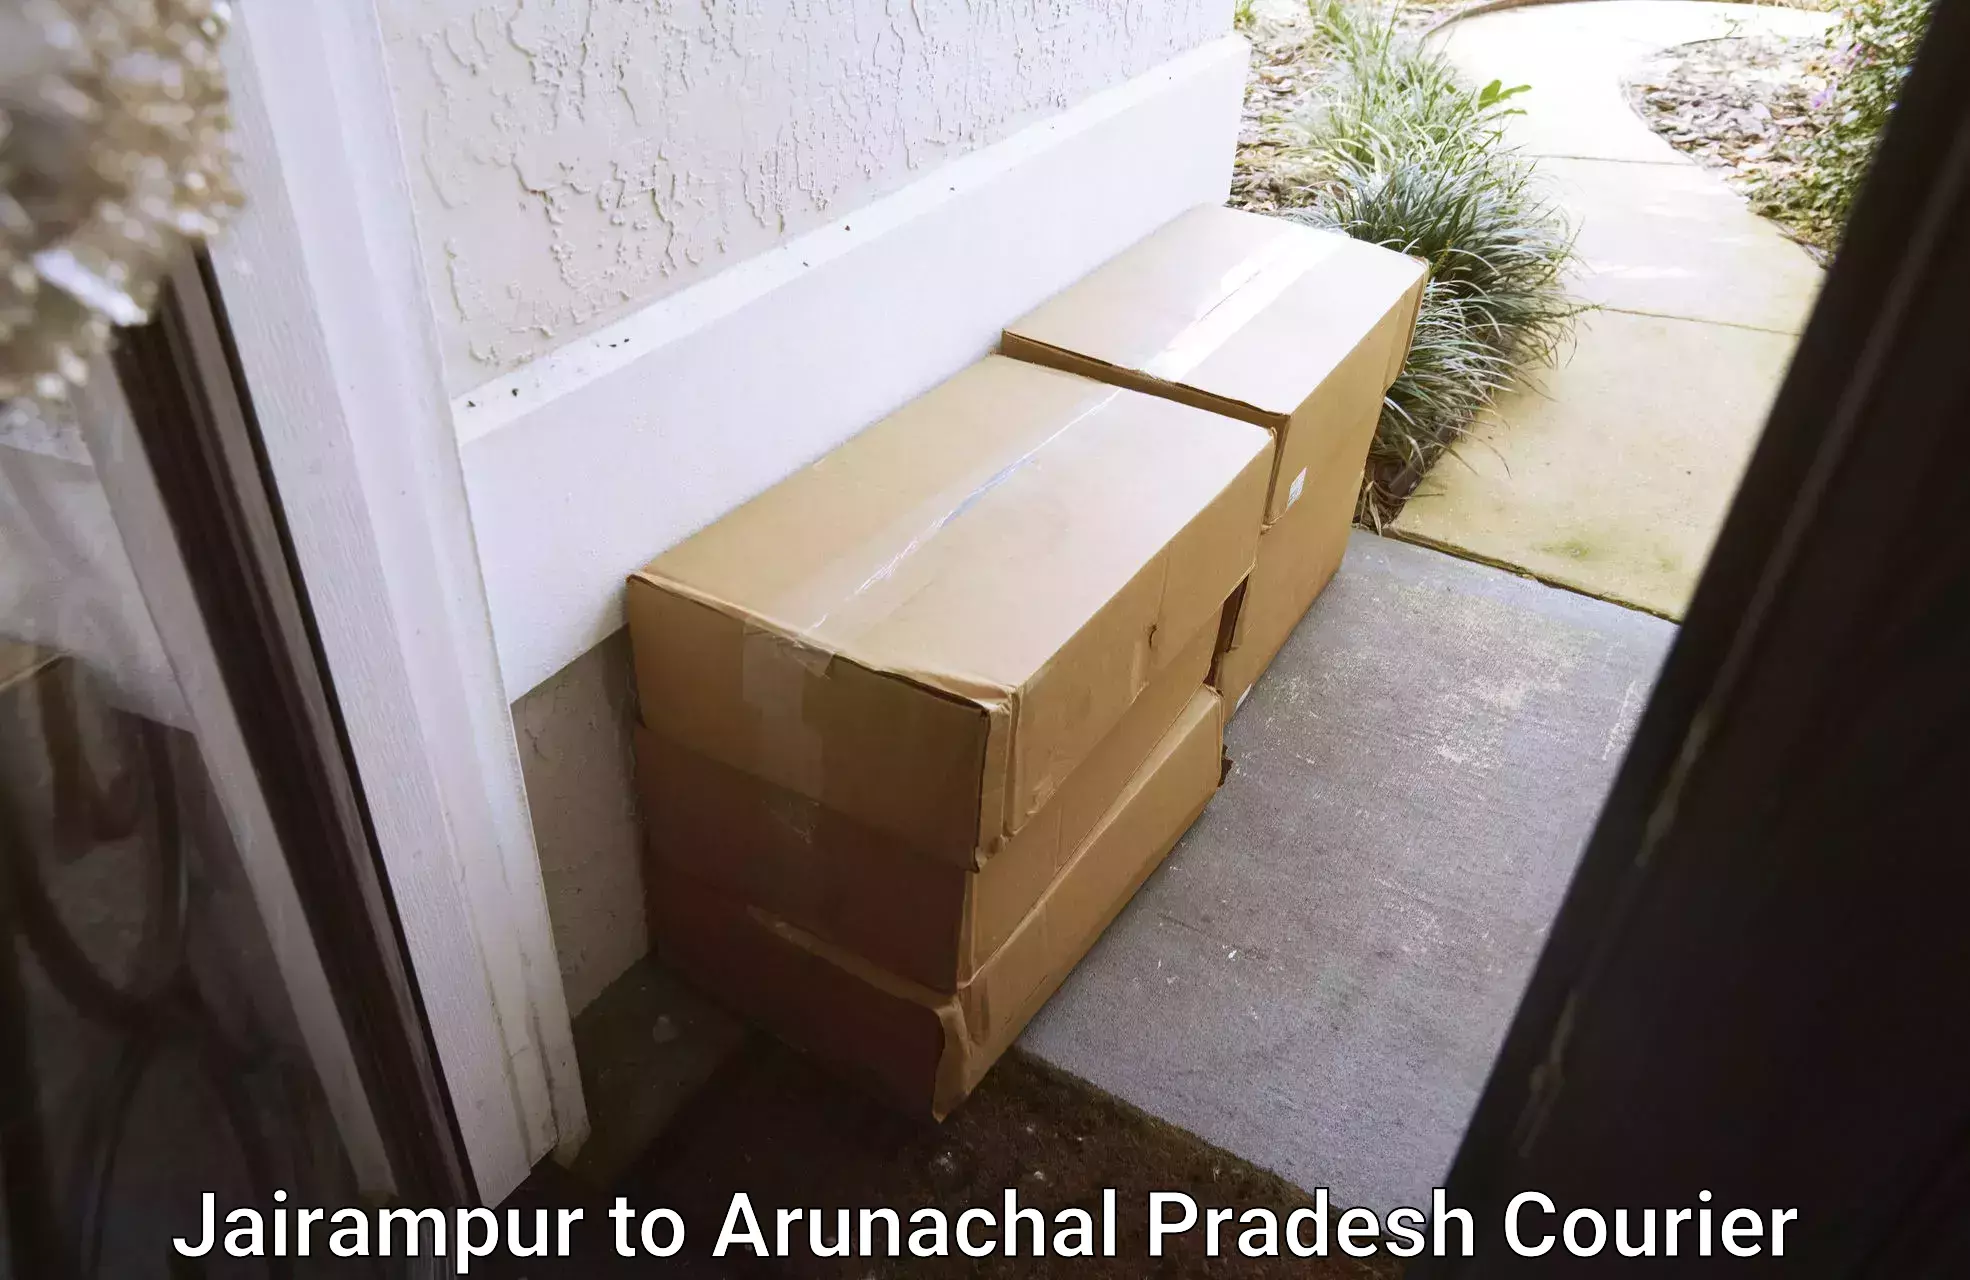 Courier service efficiency Jairampur to Tirap